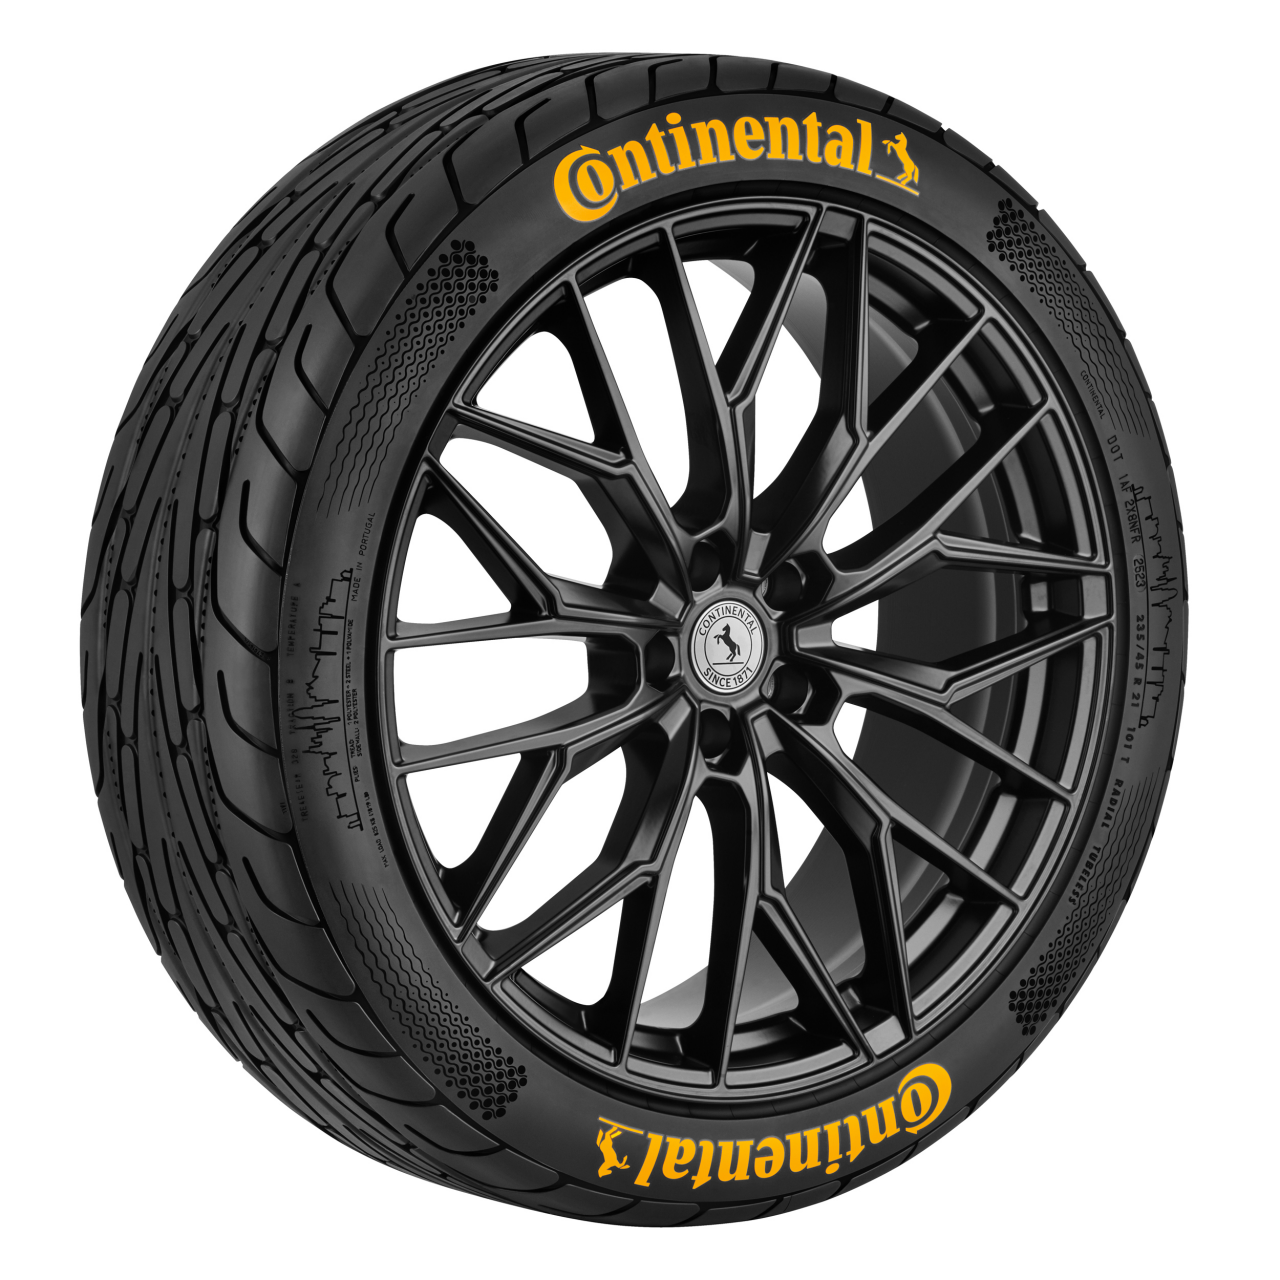 IAA 2023: Novedades de los neumáticos Continental y Tendencias de movilidad